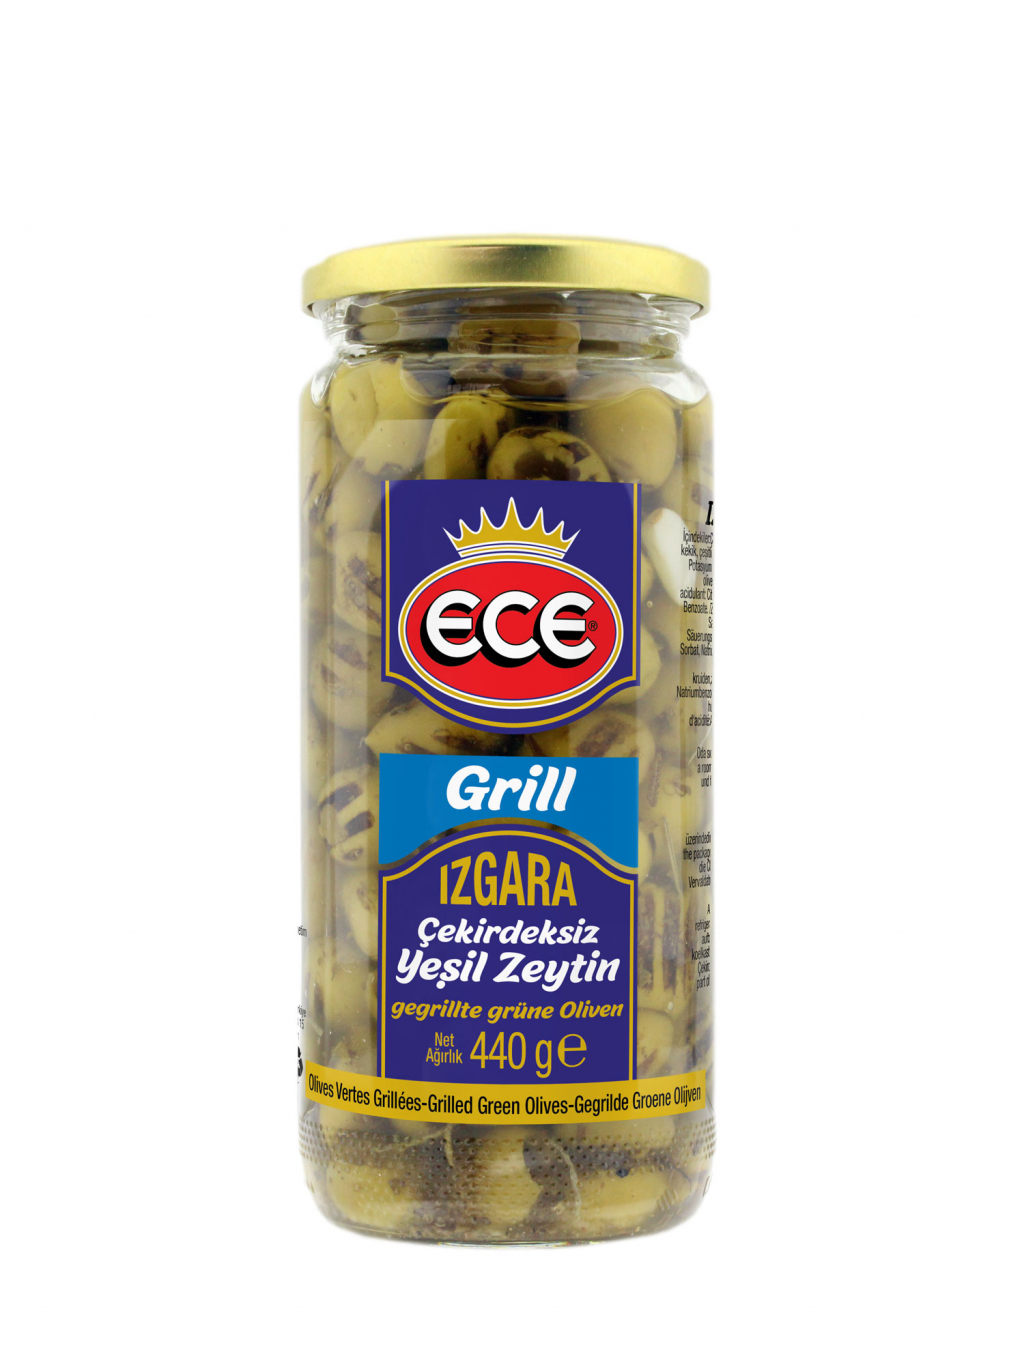 ECE - Grill Izgara Yesil Zeytin - grilované olivy 440g